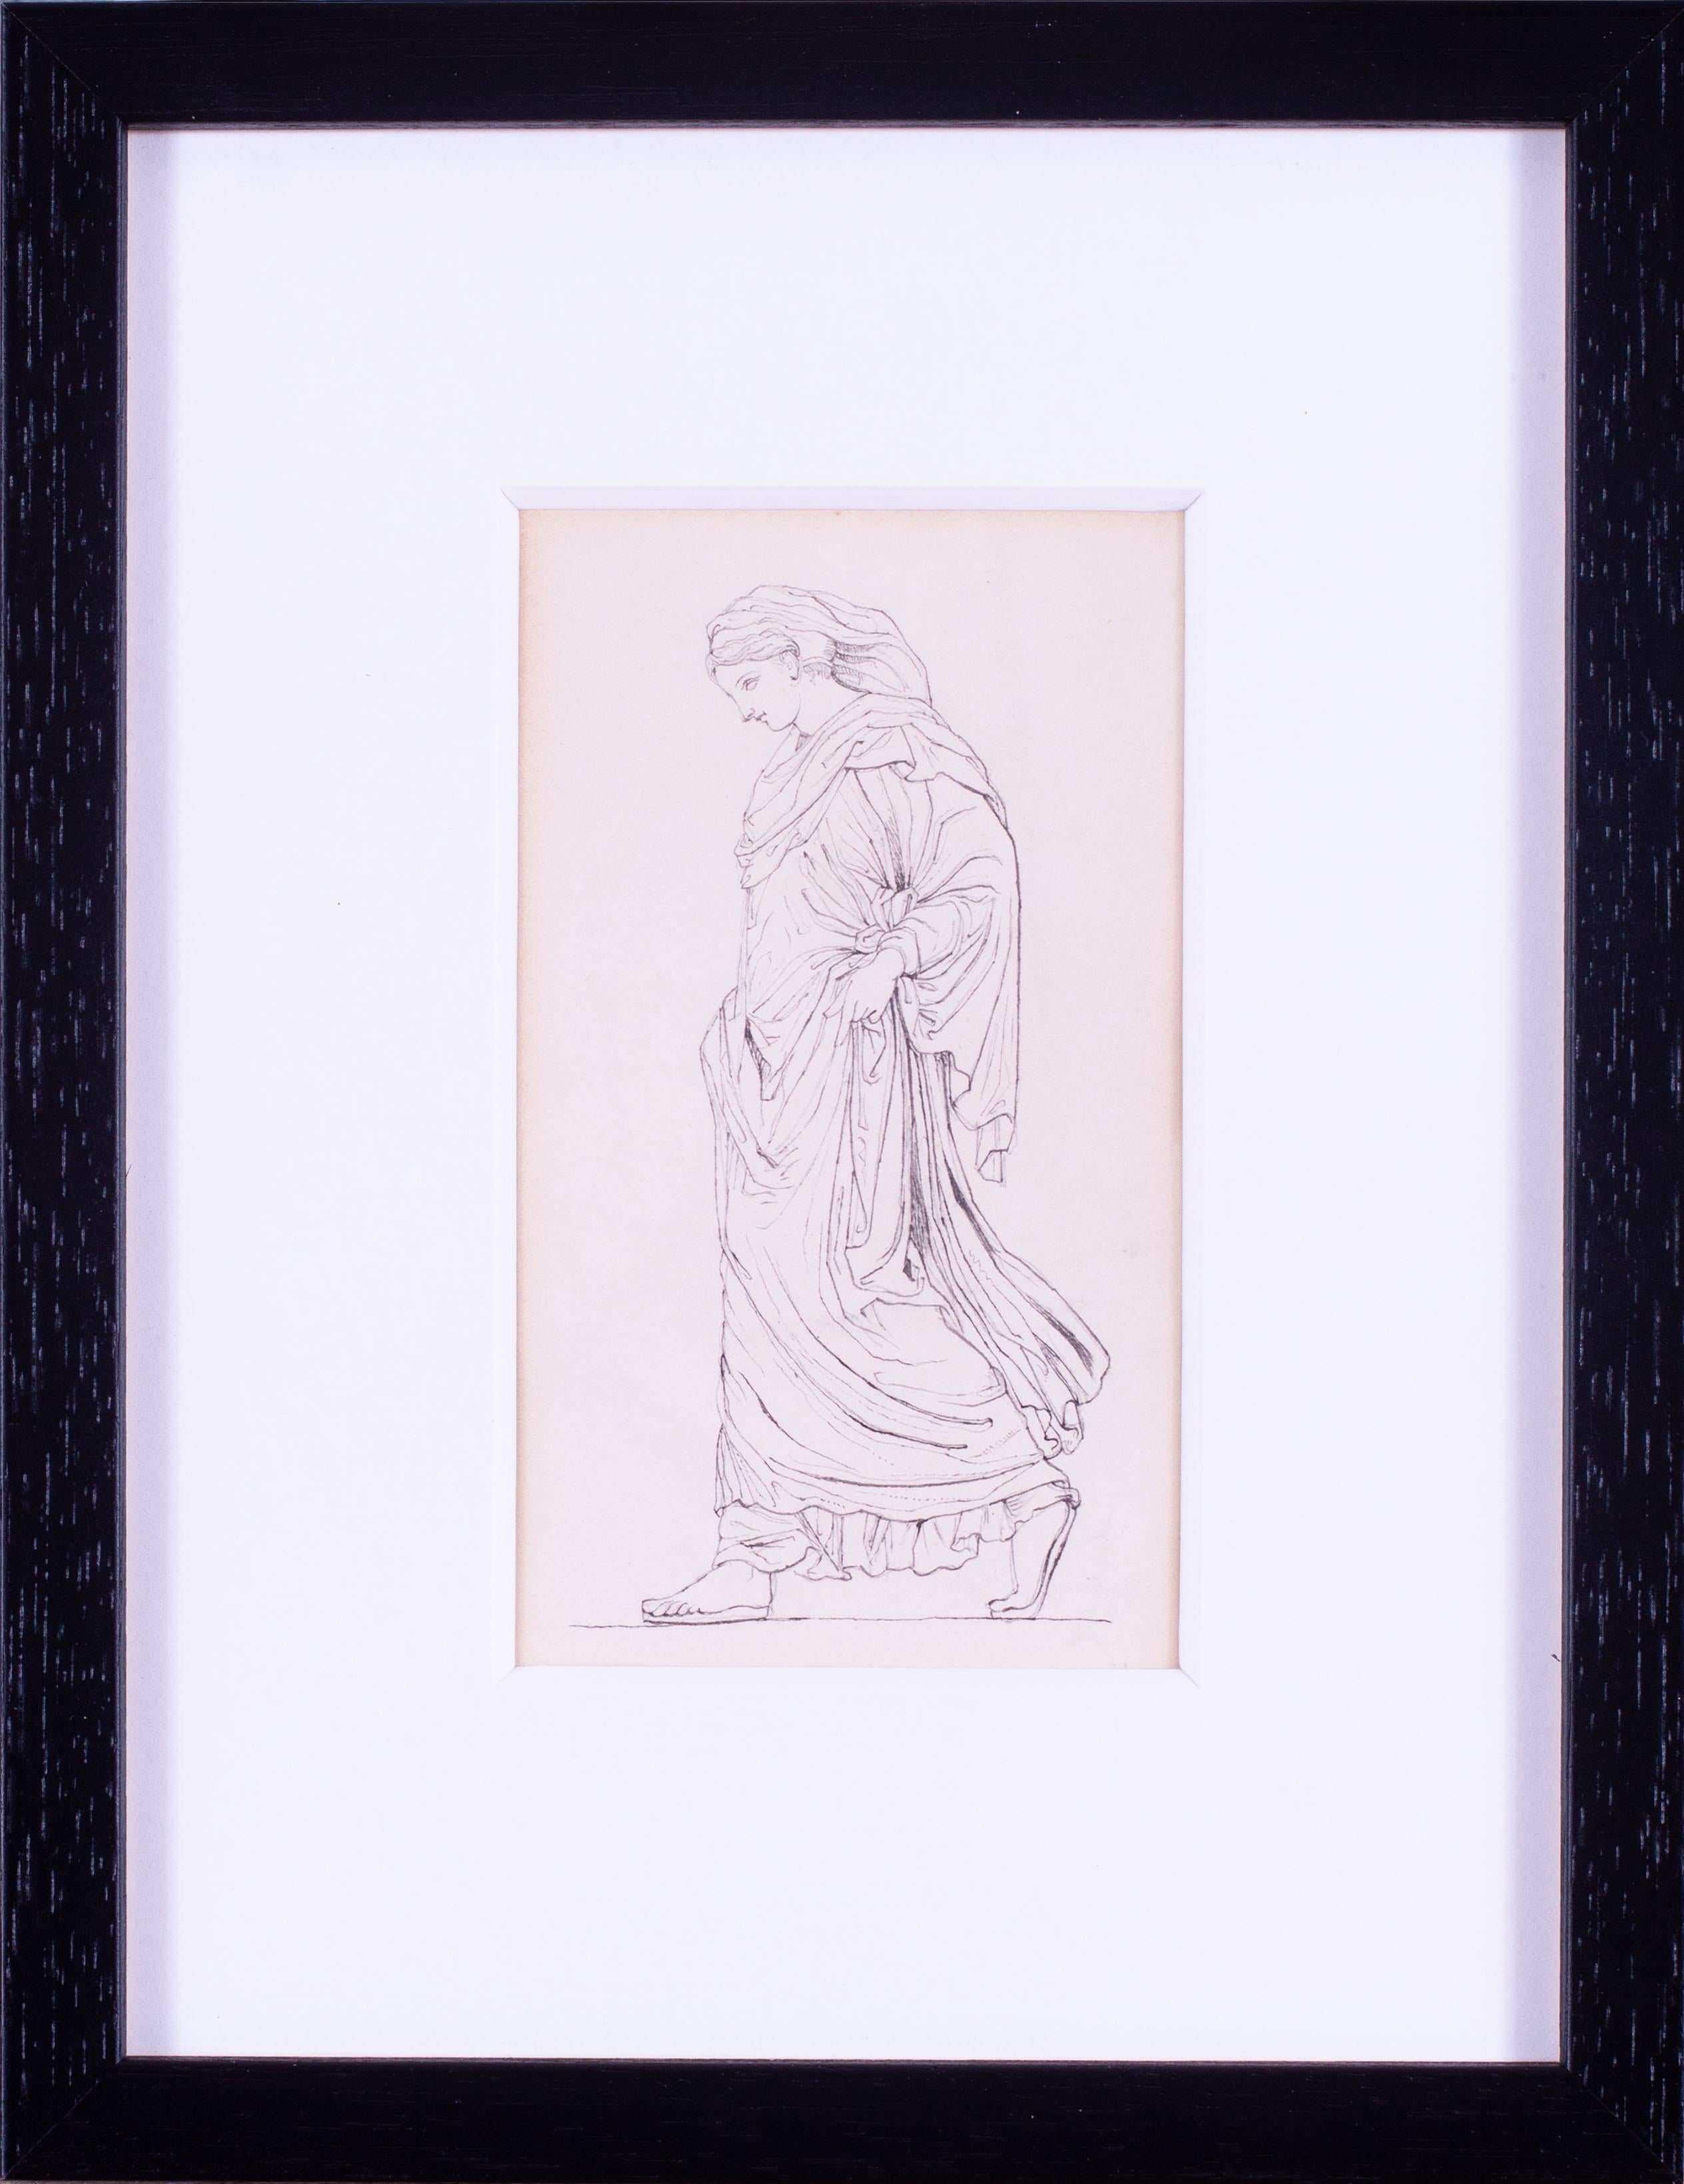 Zeichnung einer klassischen Jungfrau aus dem 19. Jahrhundert, John Flaxman zugeschrieben